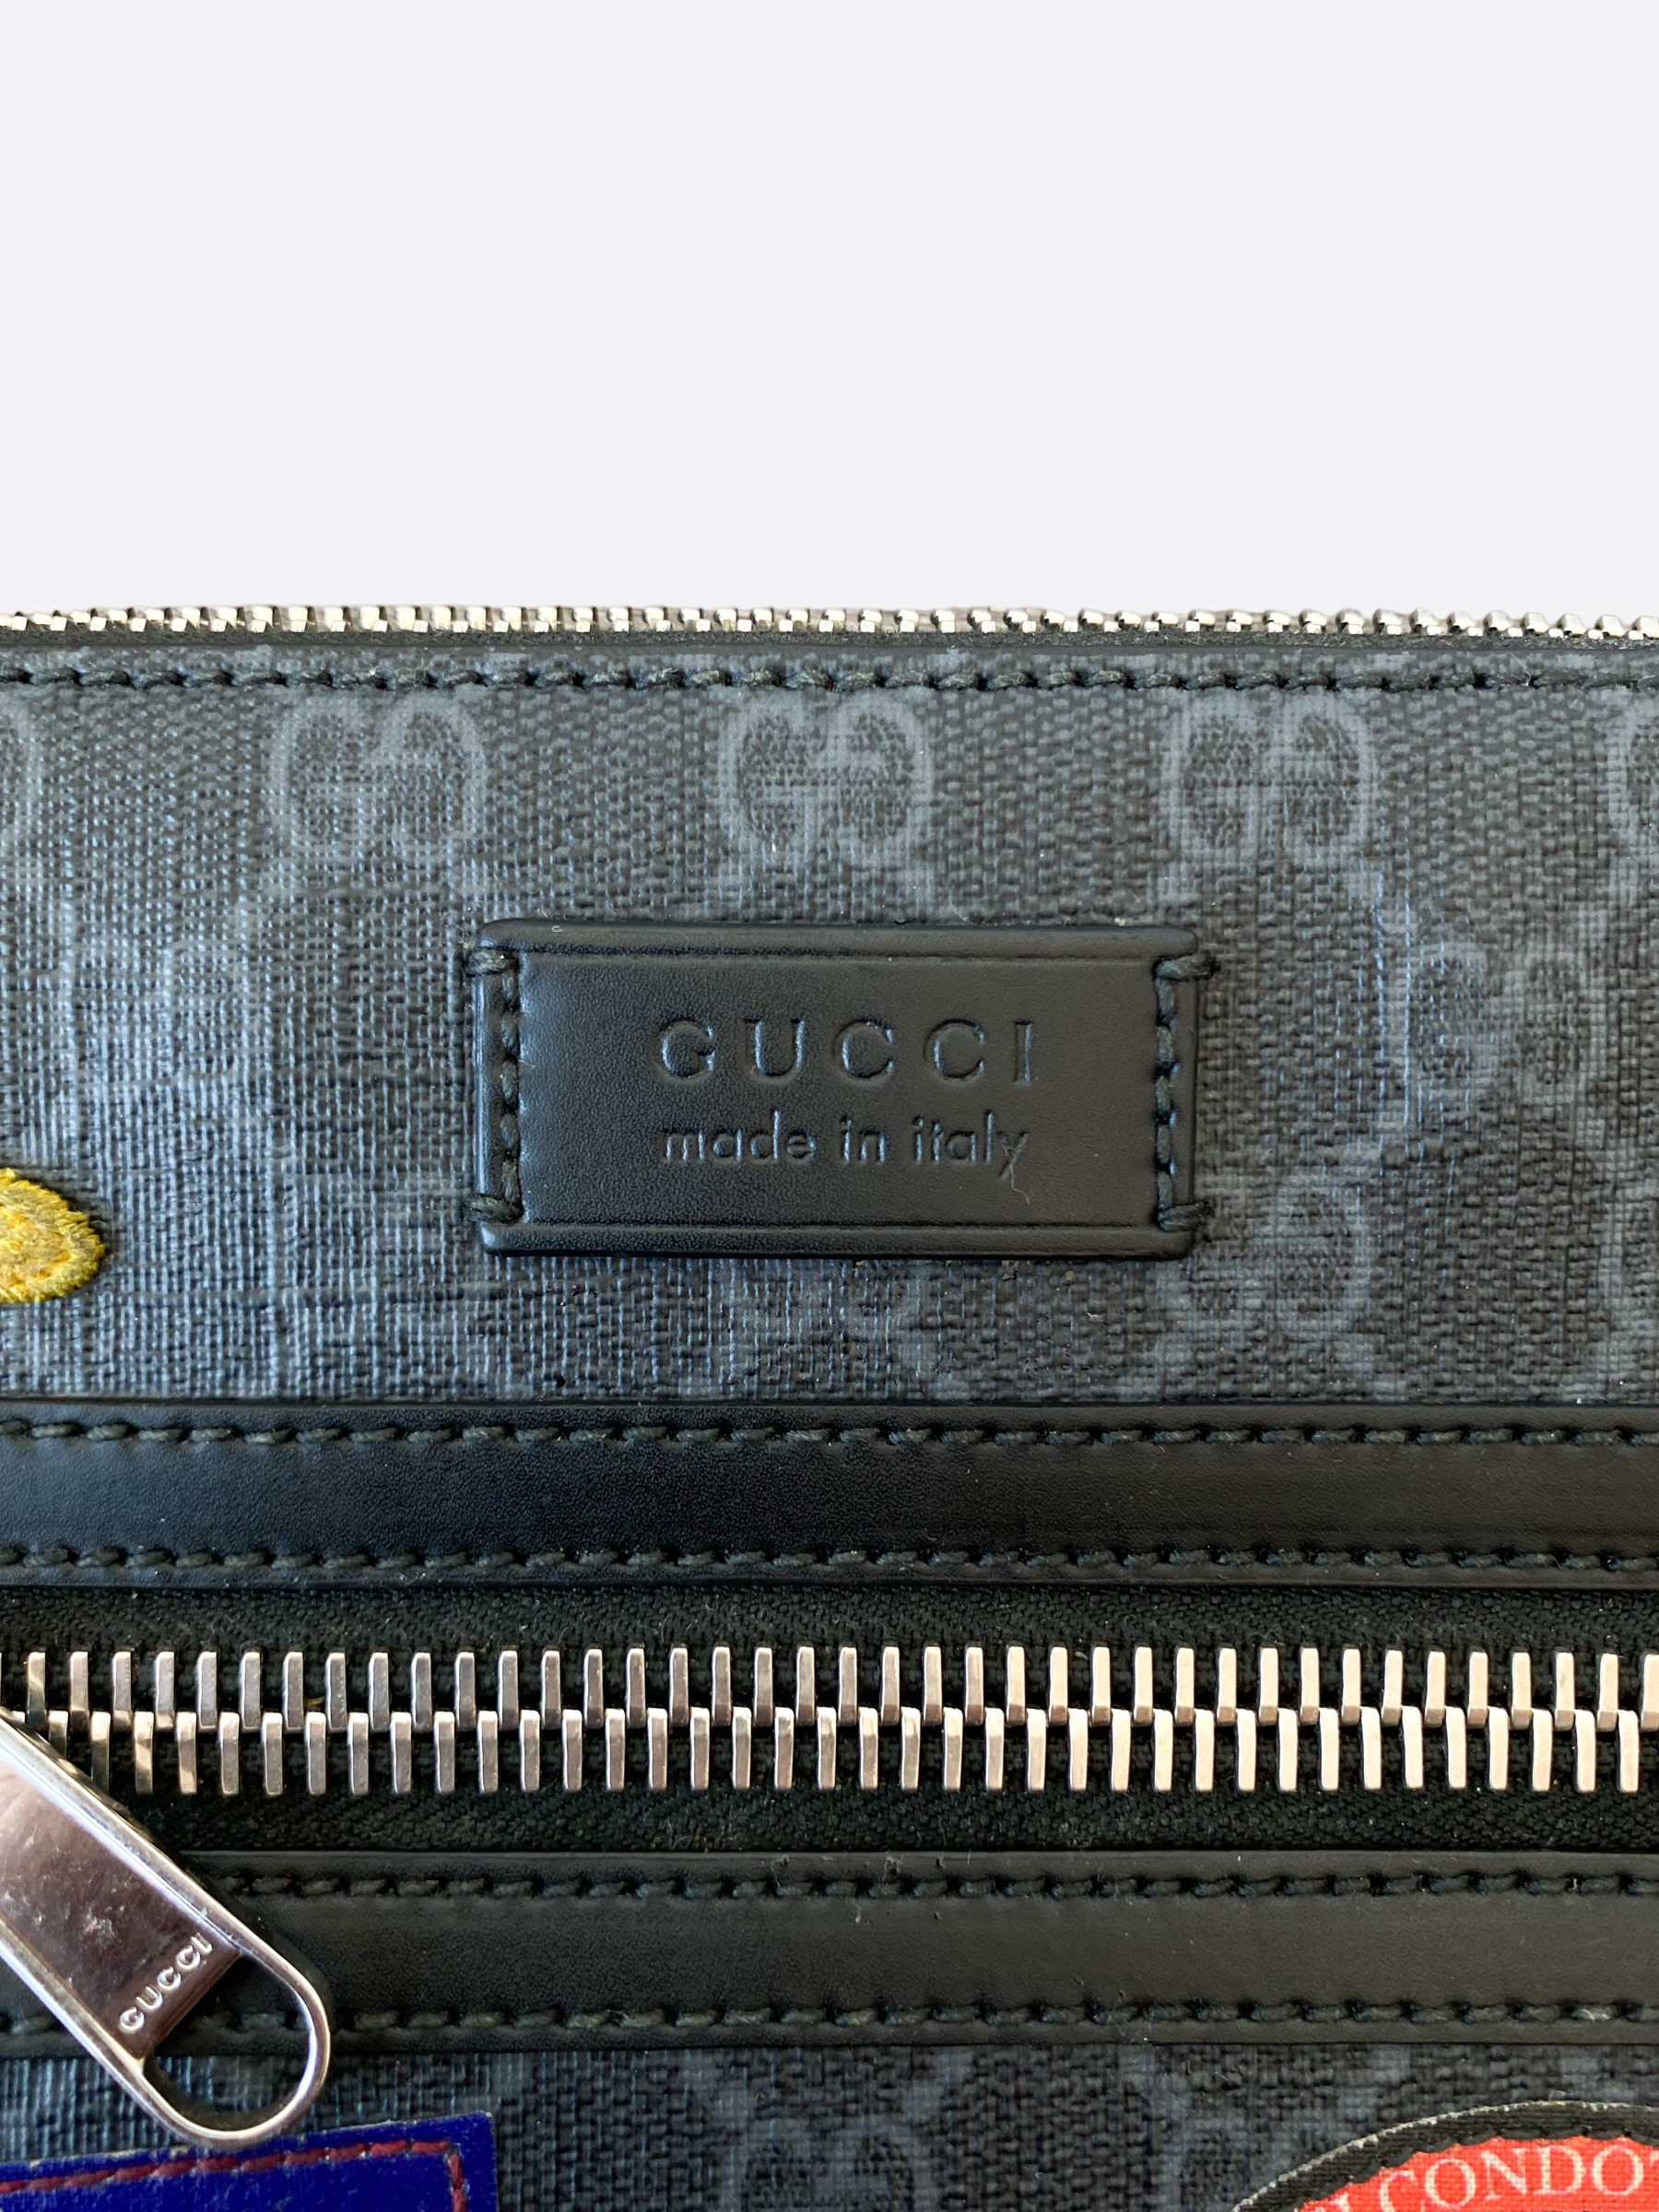 Real vs Fake Gucci Messenger GG Supreme Small Bag 